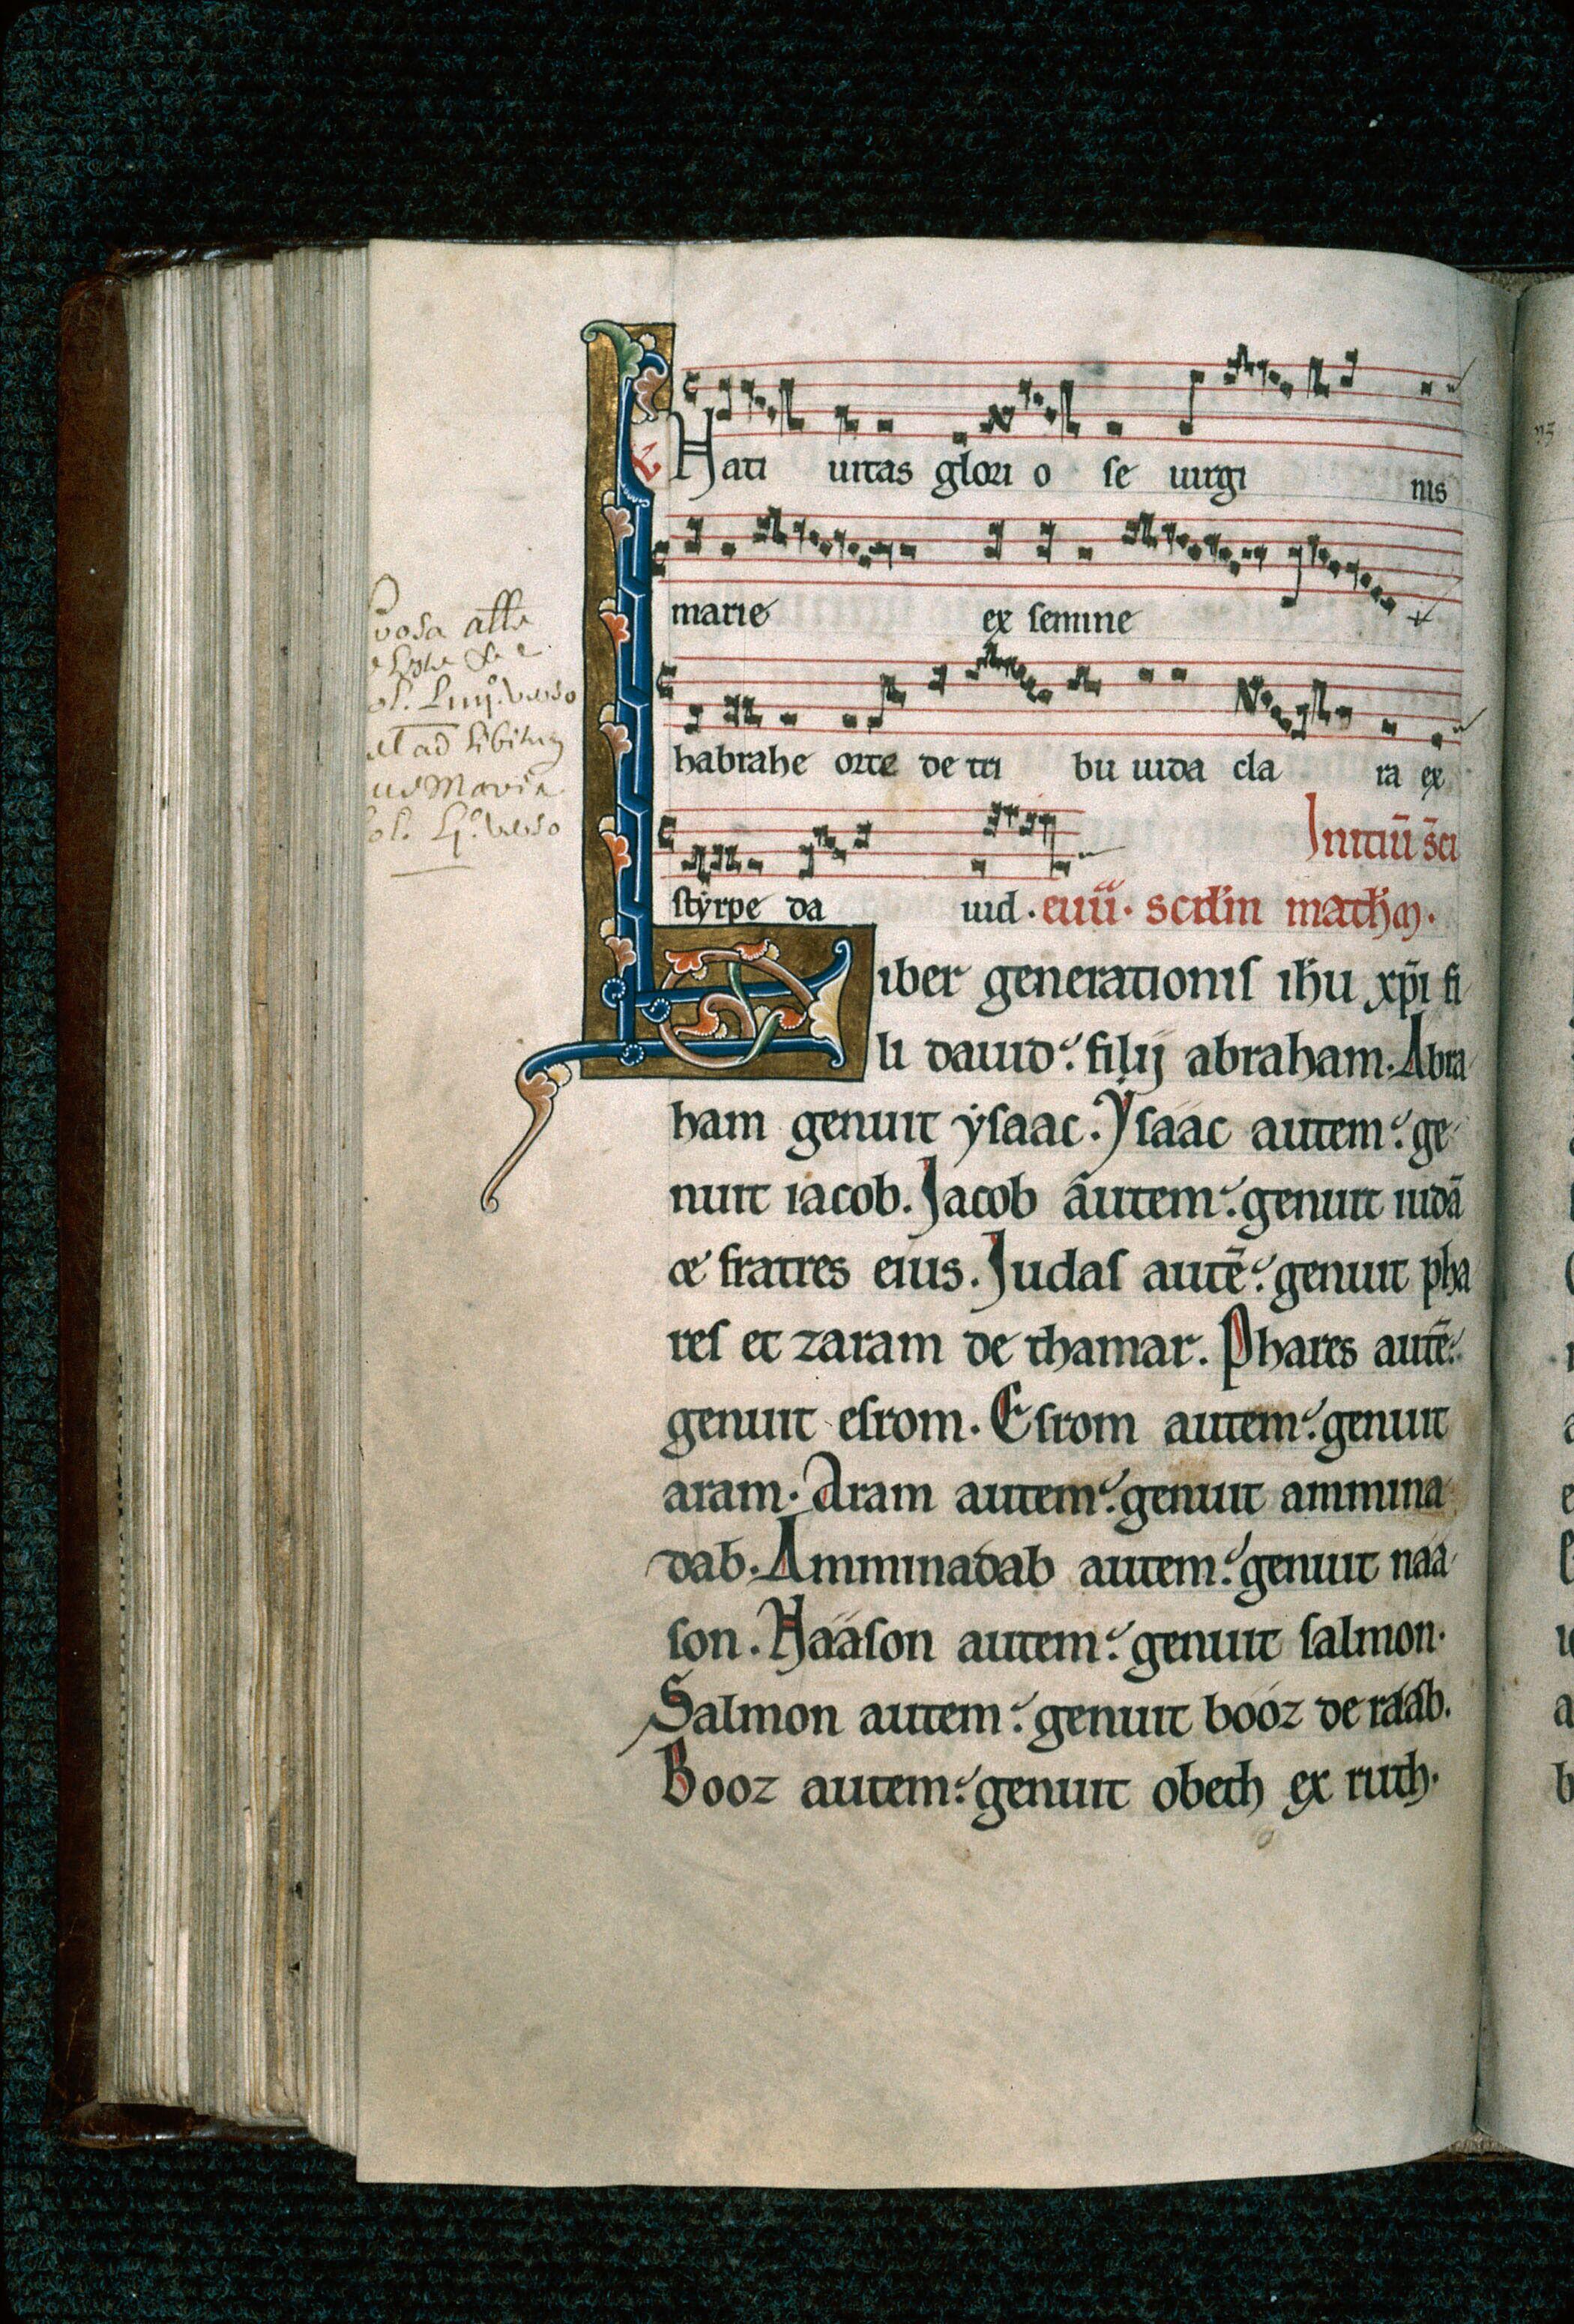 BM Provins, Fonds ancien, ms. 11, missel-prosaire de Sens, XIIIe s, feuillet avec initiale enluminée